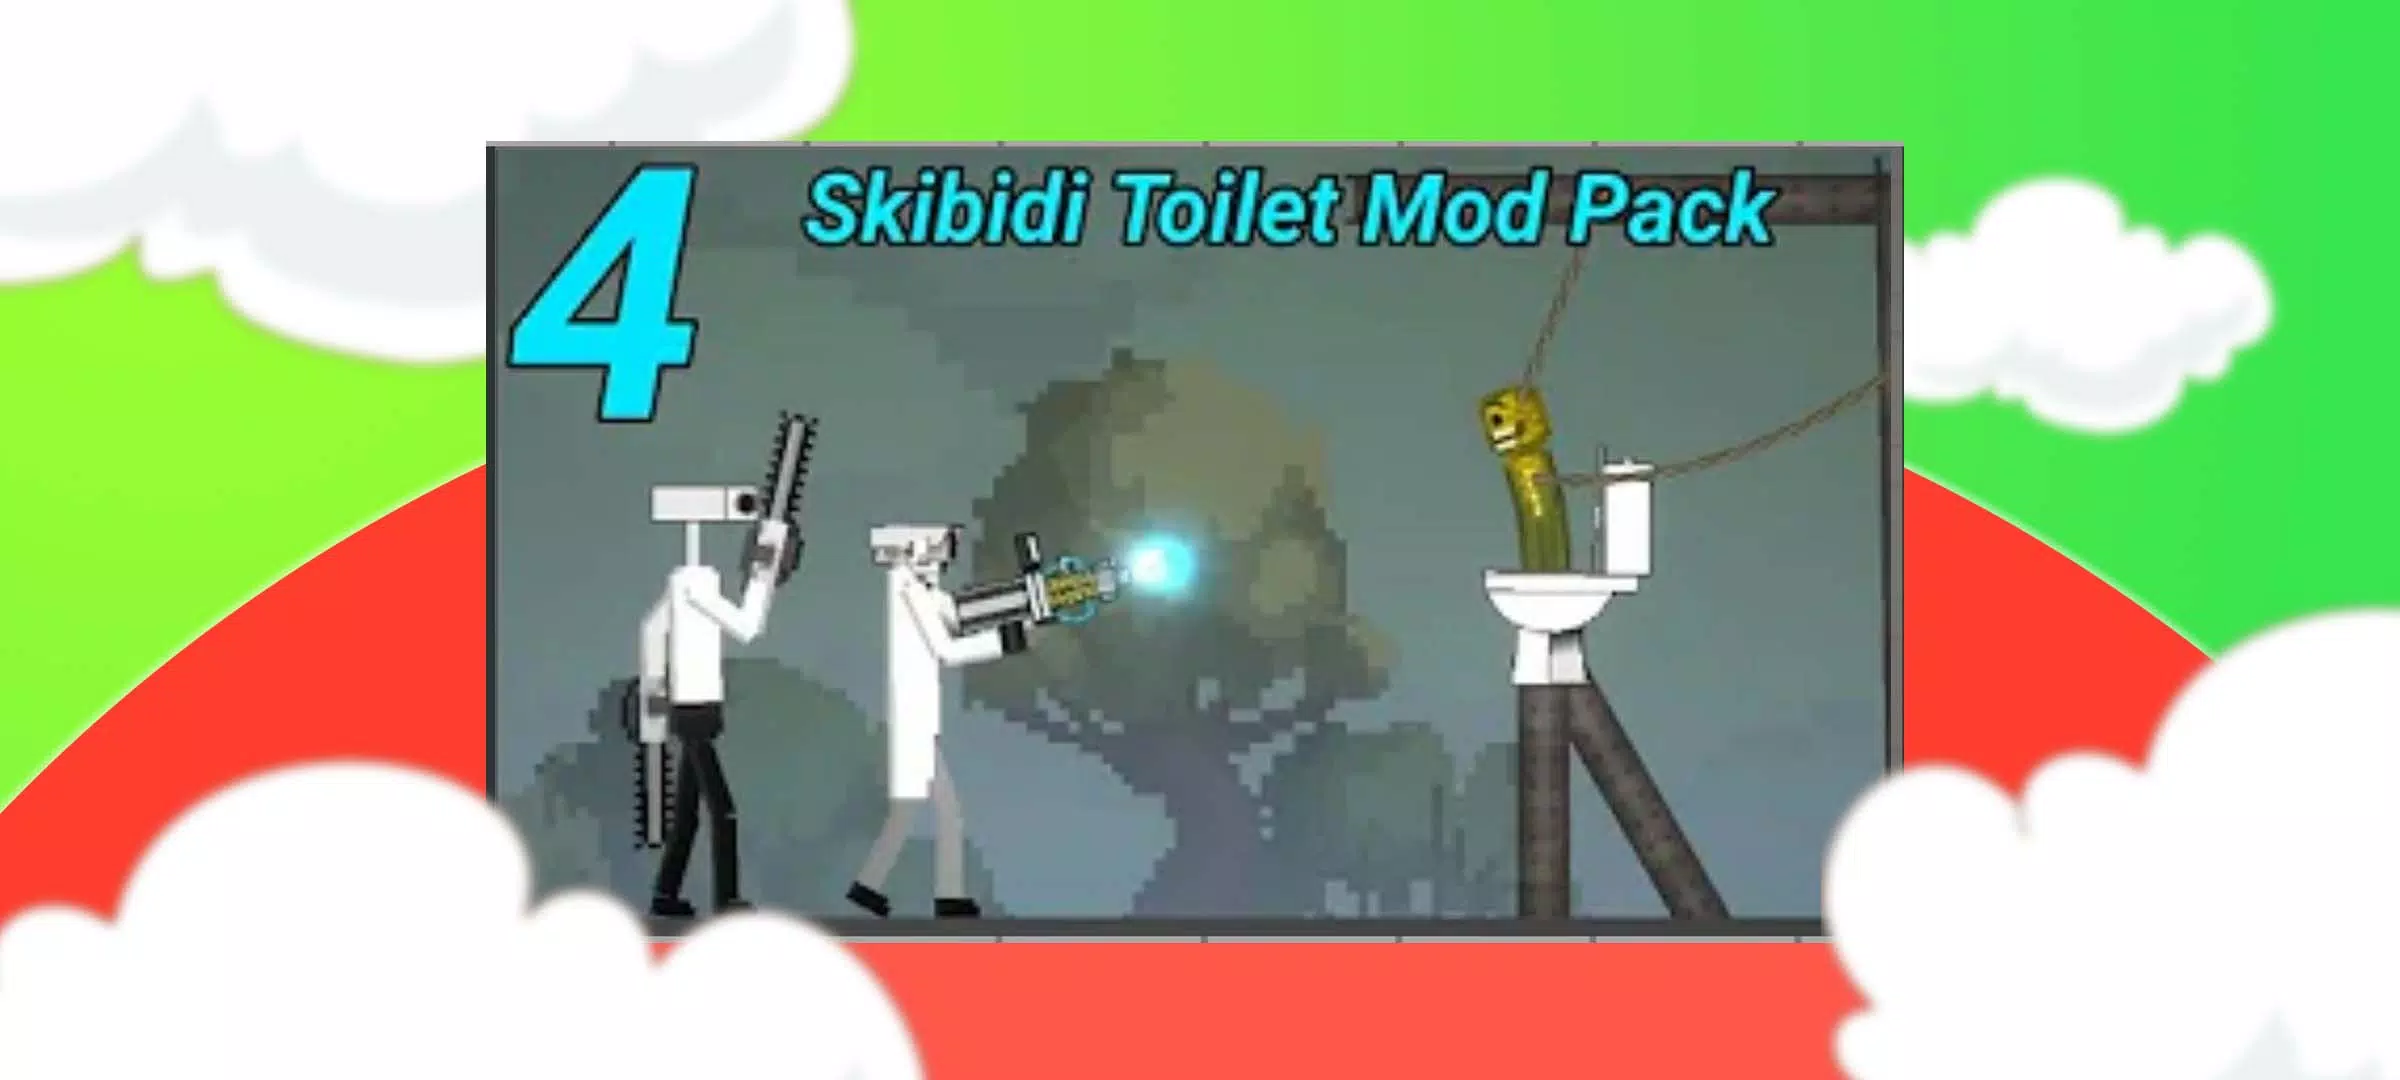 skibidi toilet Gman 4.0 for Melon Playground Mods (Melon Sandbox) - Melmod